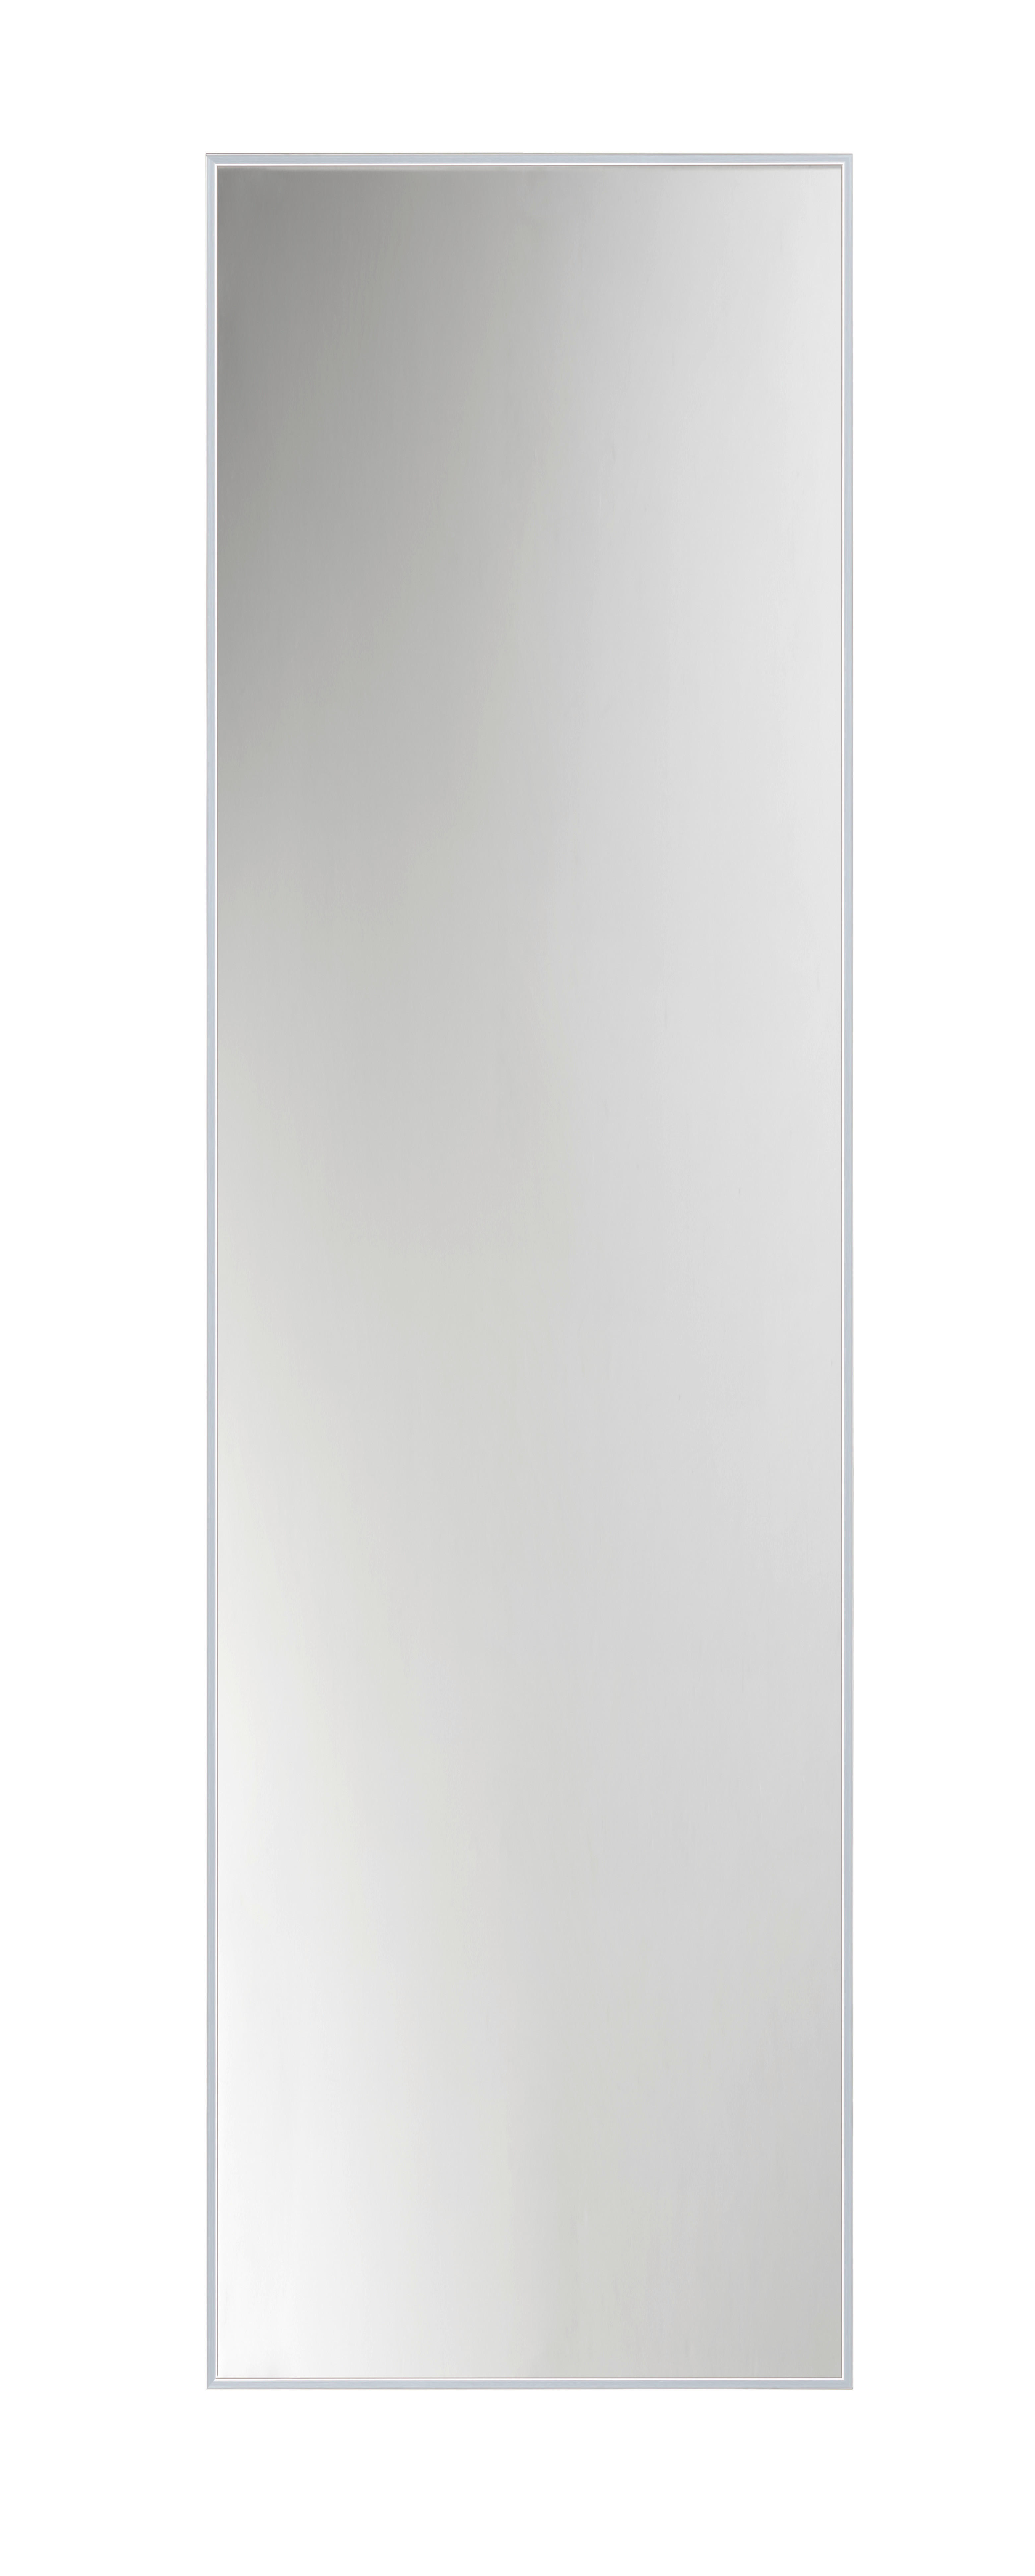 Xora NÁSTĚNNÉ ZRCADLO 41/141/2 cm - barvy stříbra